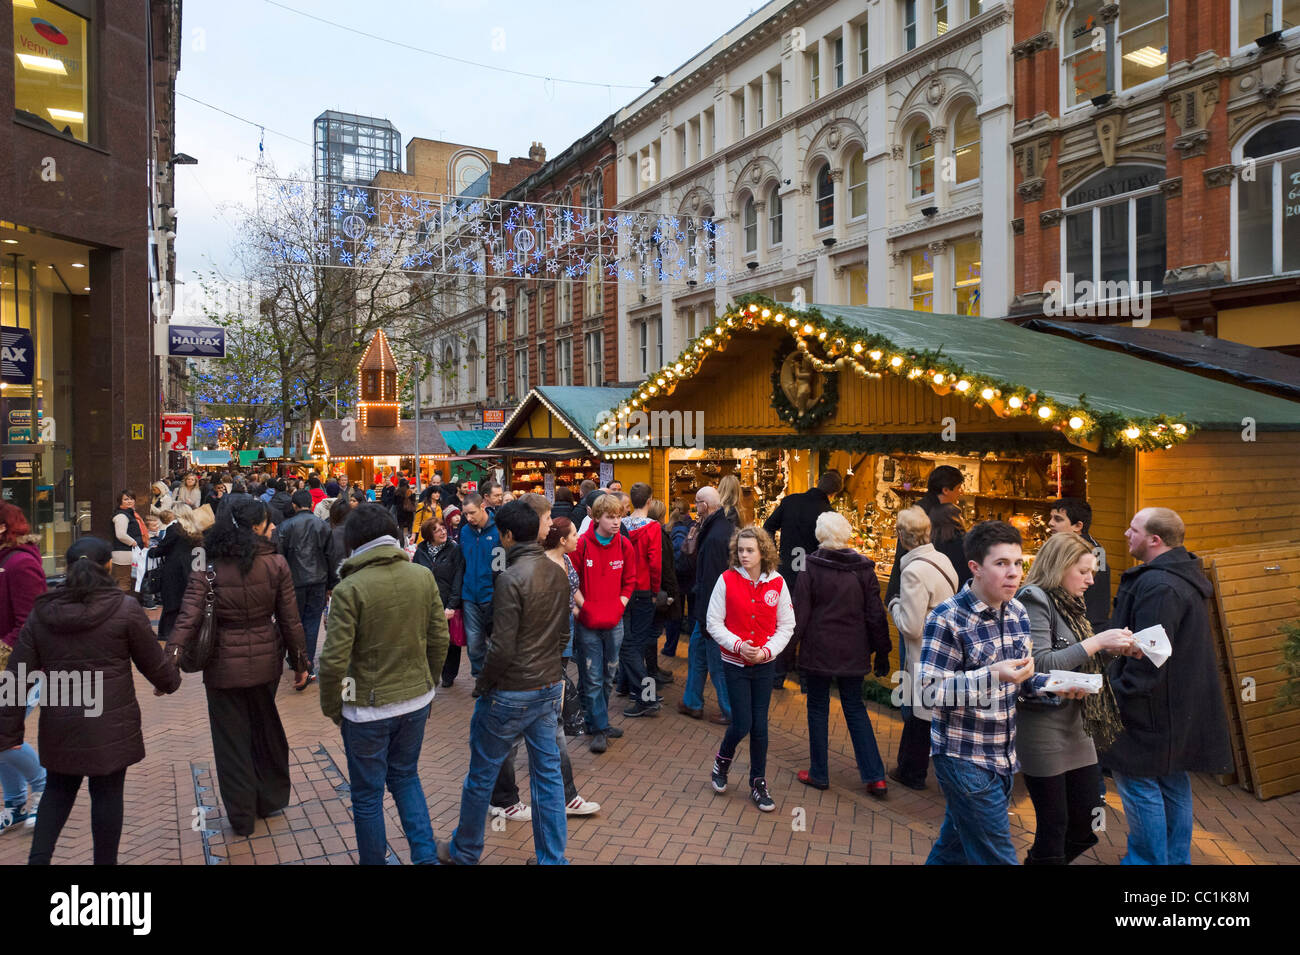 La Folla di last minute Christmas Shopper in parte anteriore del Tedesco Francoforte Mercatino di Natale, New Street, Birmingham, Regno Unito Foto Stock